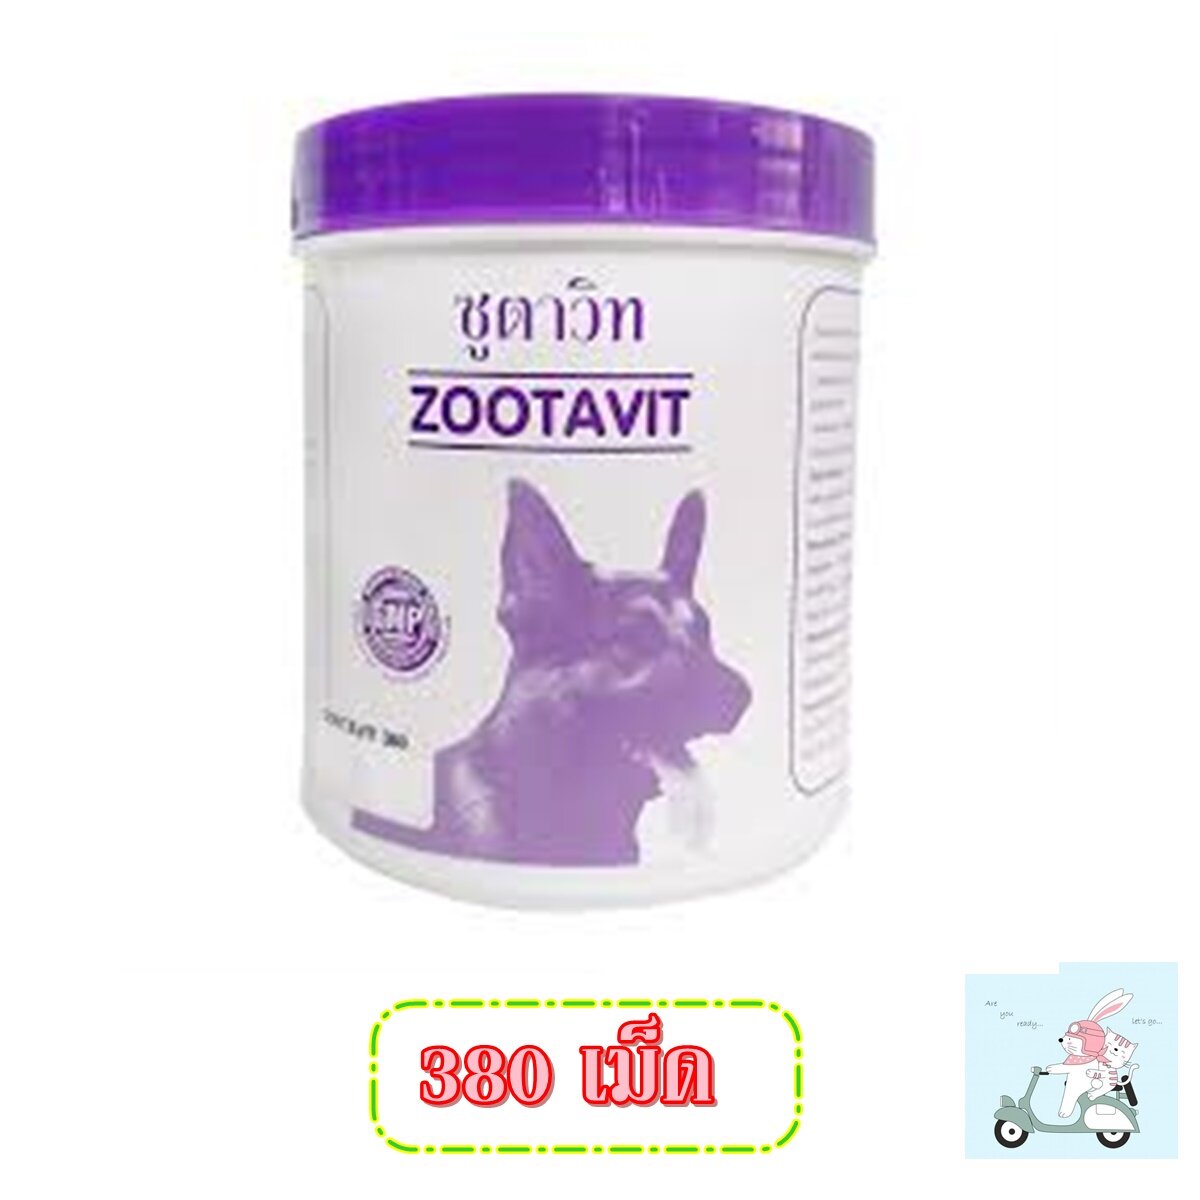 Zootavit ซูตาวิท อาหารเสริม แคลเซียม สุนัข ขนาด 380 เม็ด